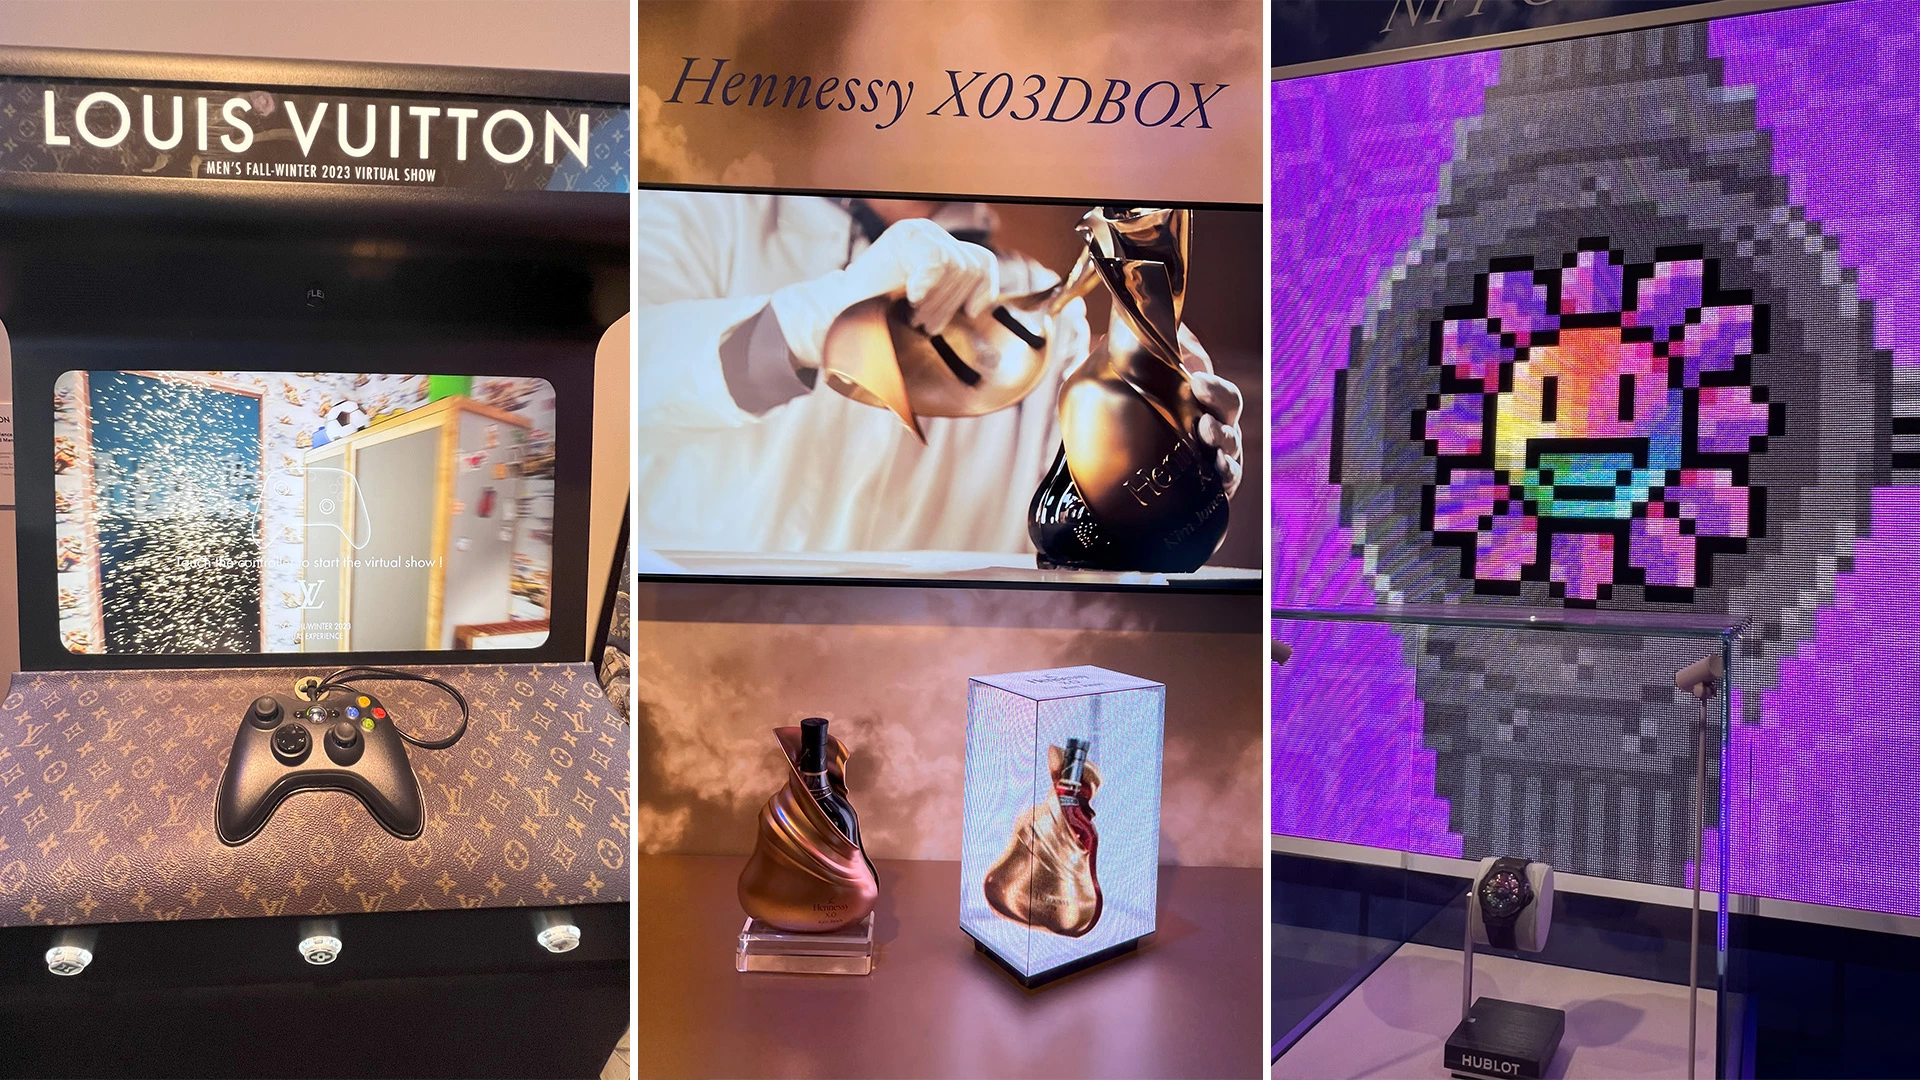 Louis Vuitton / Hennessy / Hublot VIVAtech 2023